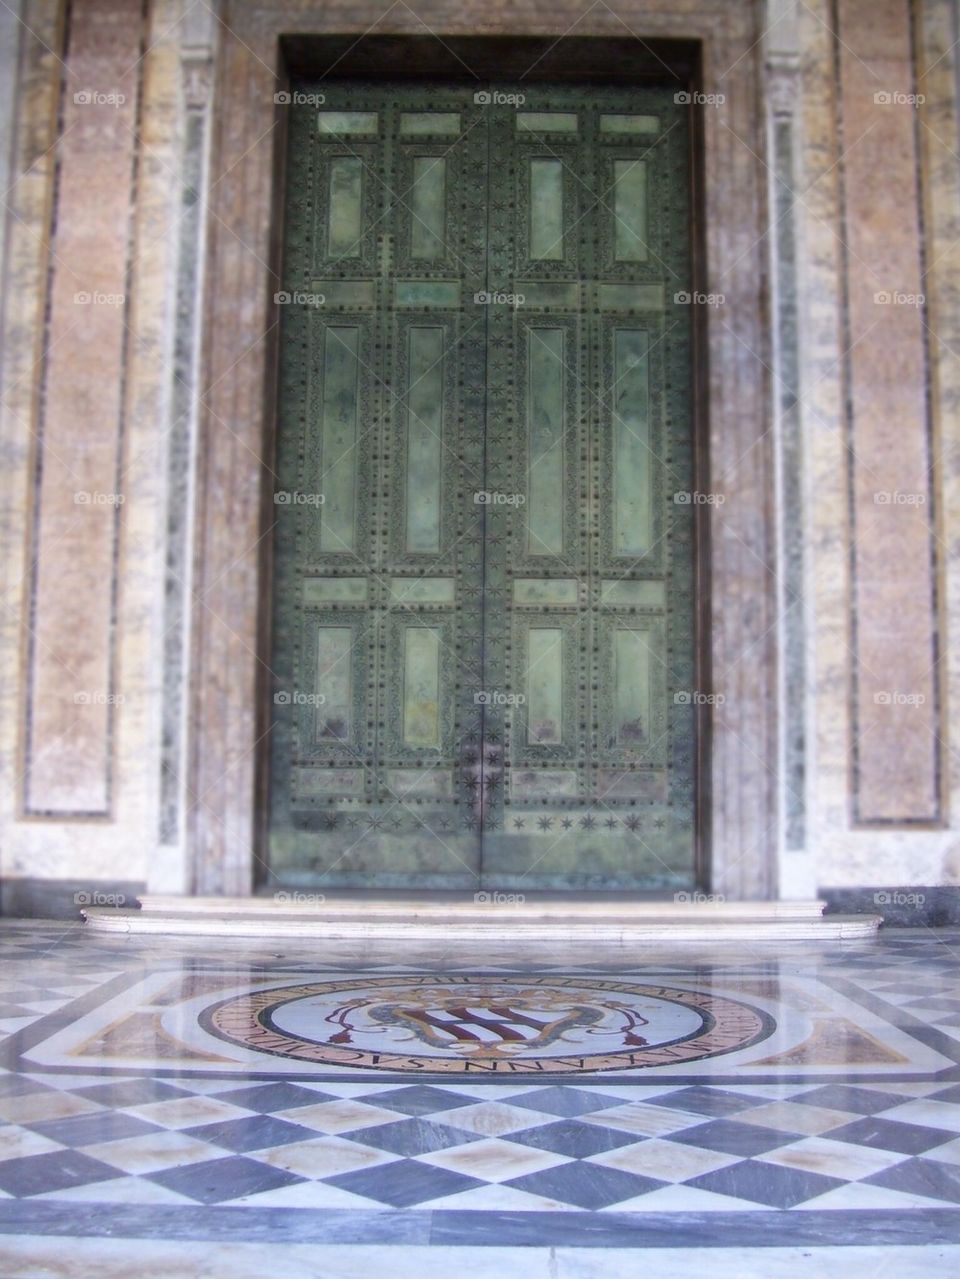 Doorways of Rome, Italy